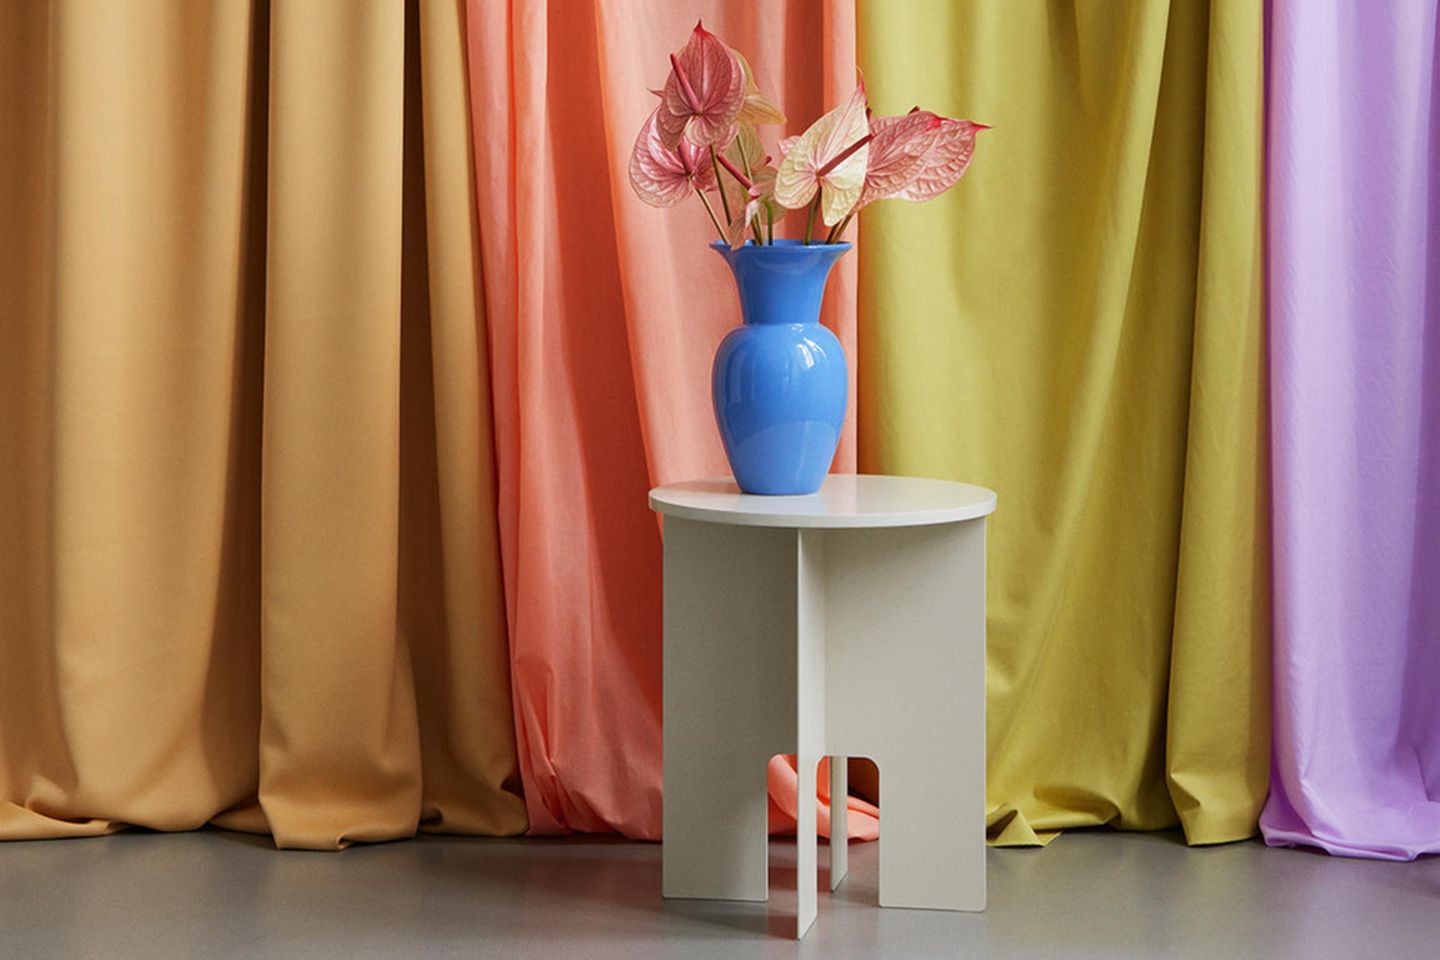 Blaue Vase auf beigefarbenem Beistelltisch vor bunten Vorhängen